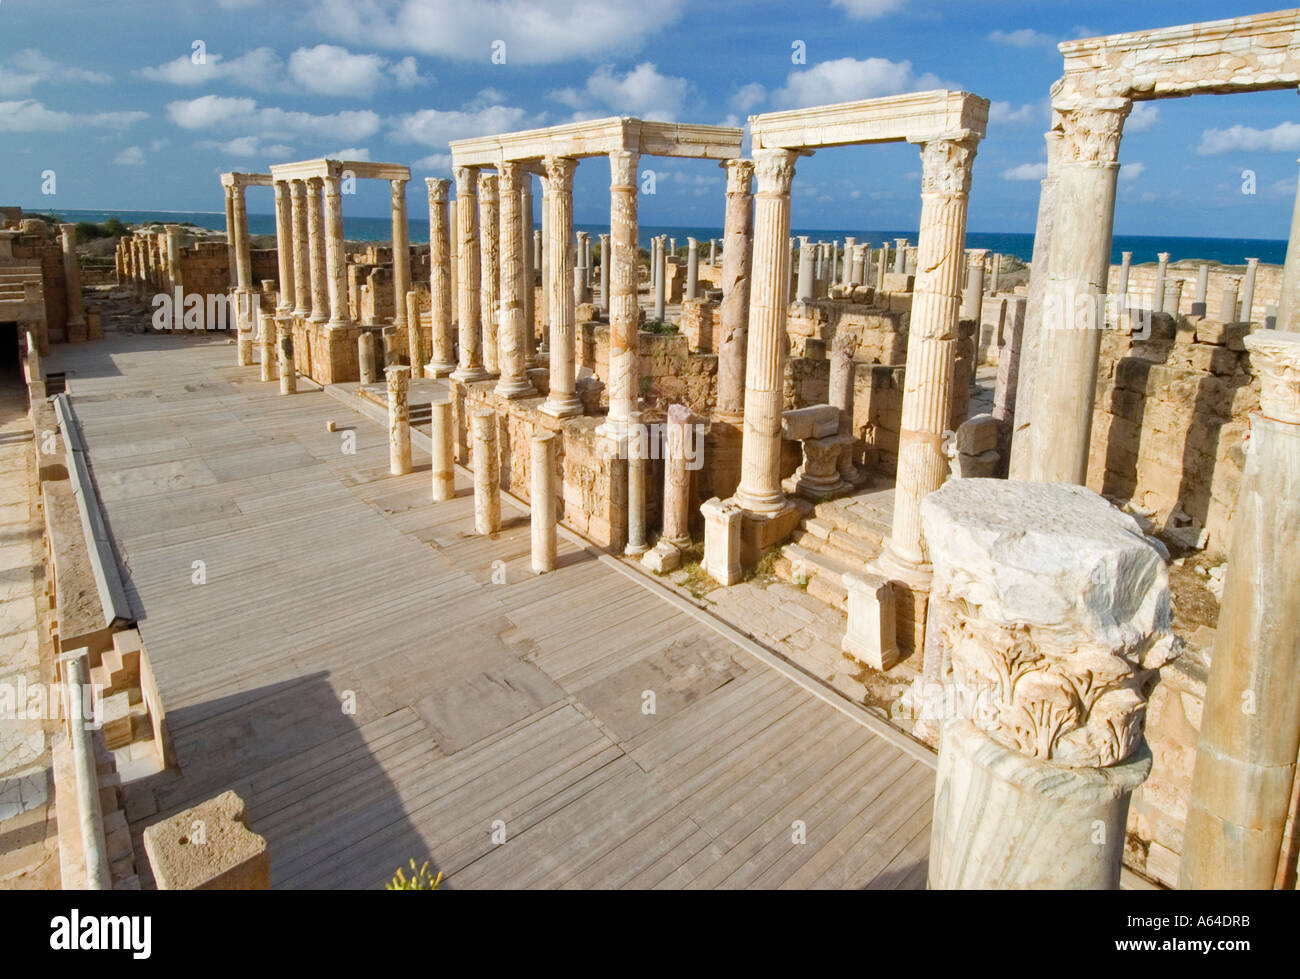 Théâtre romain de Leptis Magna, Libye, site du patrimoine mondial de l'UNESCO Banque D'Images